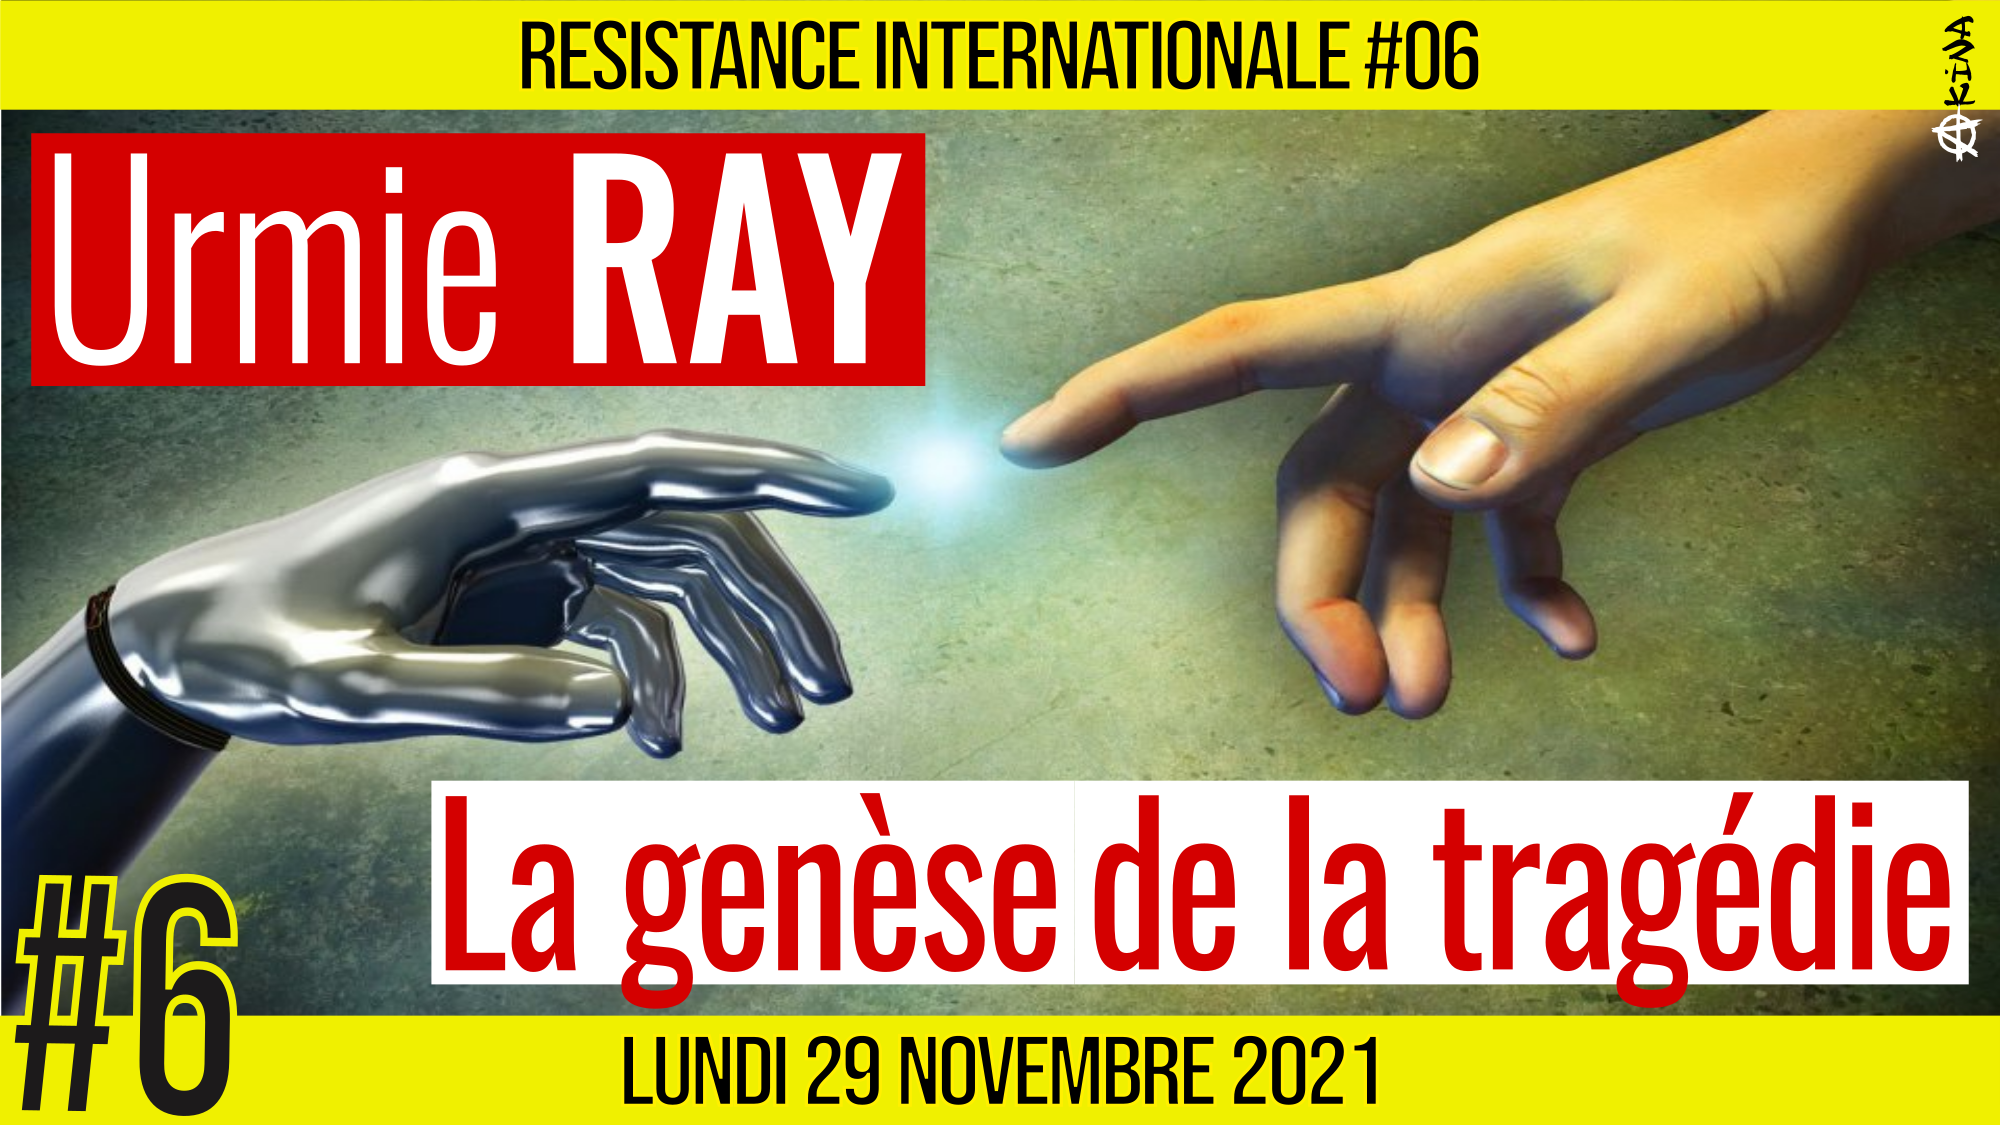 ✊ RÉSISTANCE INTERNATIONALE #06 🗣 Urmie RAY 🎯 La genèse de la tragédie : Partie 2/2 📆 29-11-2021